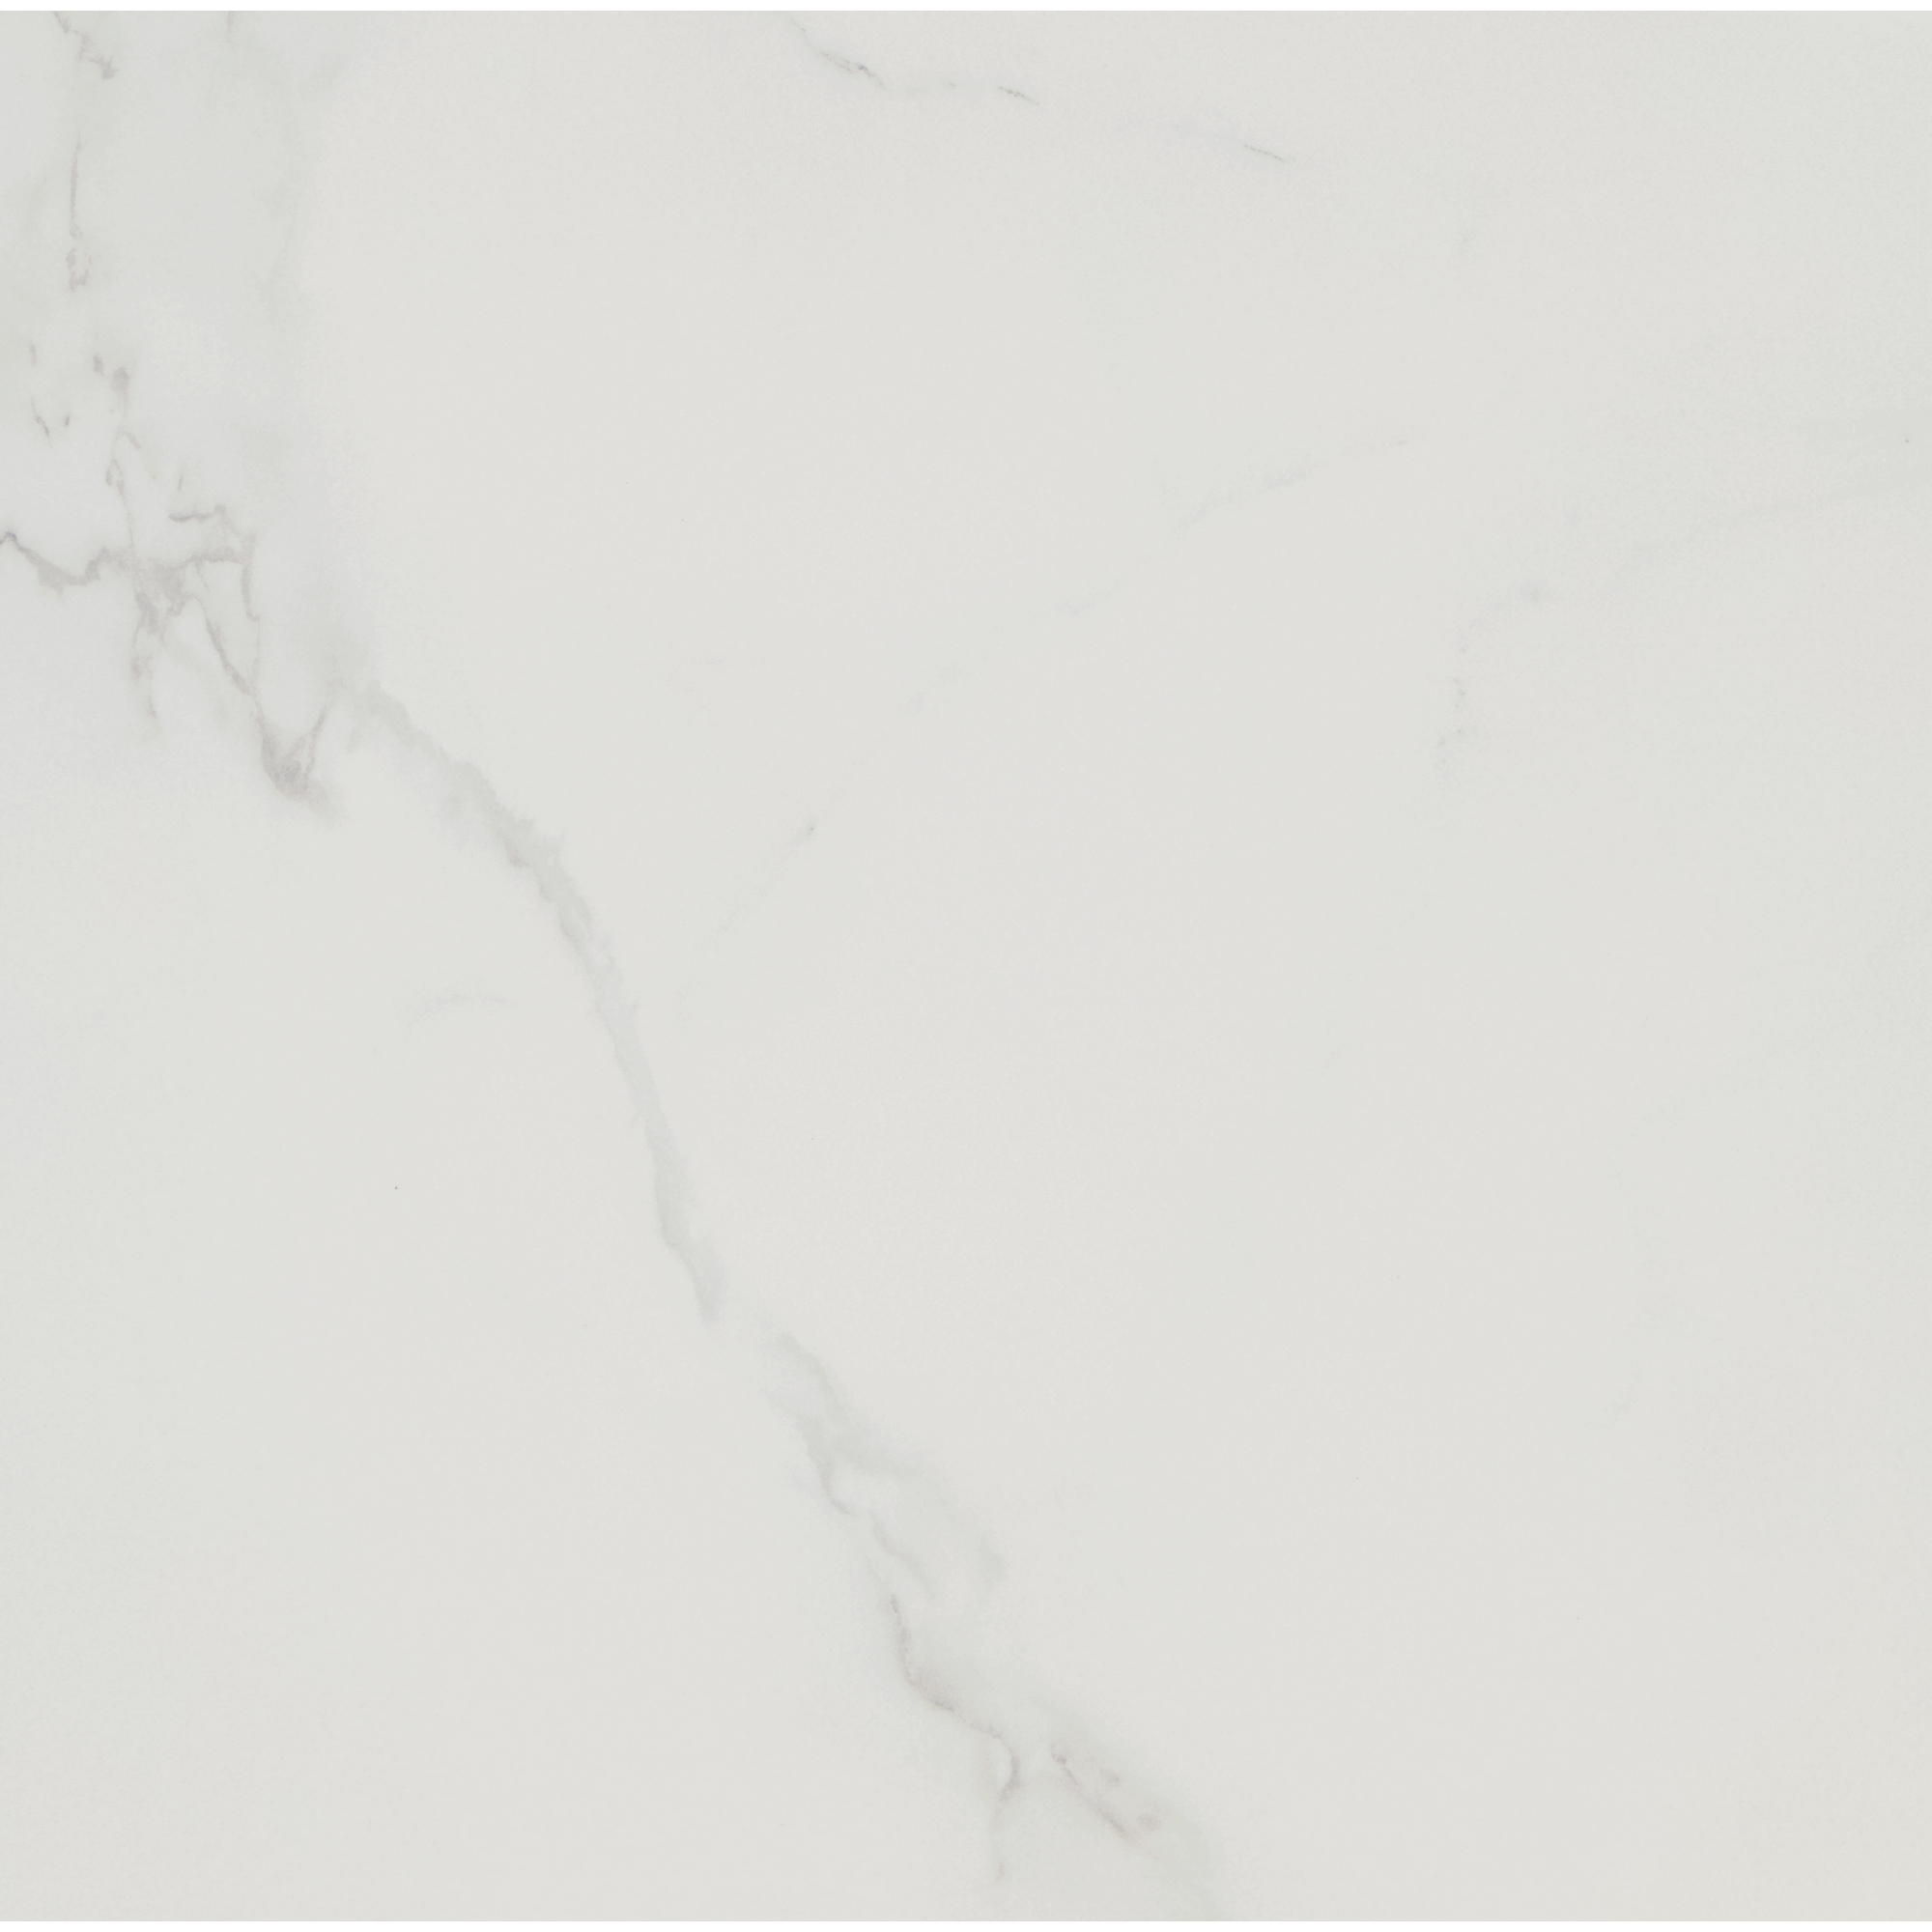 Bodenfliese 'Fontana' weiß glänzend 60 x 60 cm + product picture